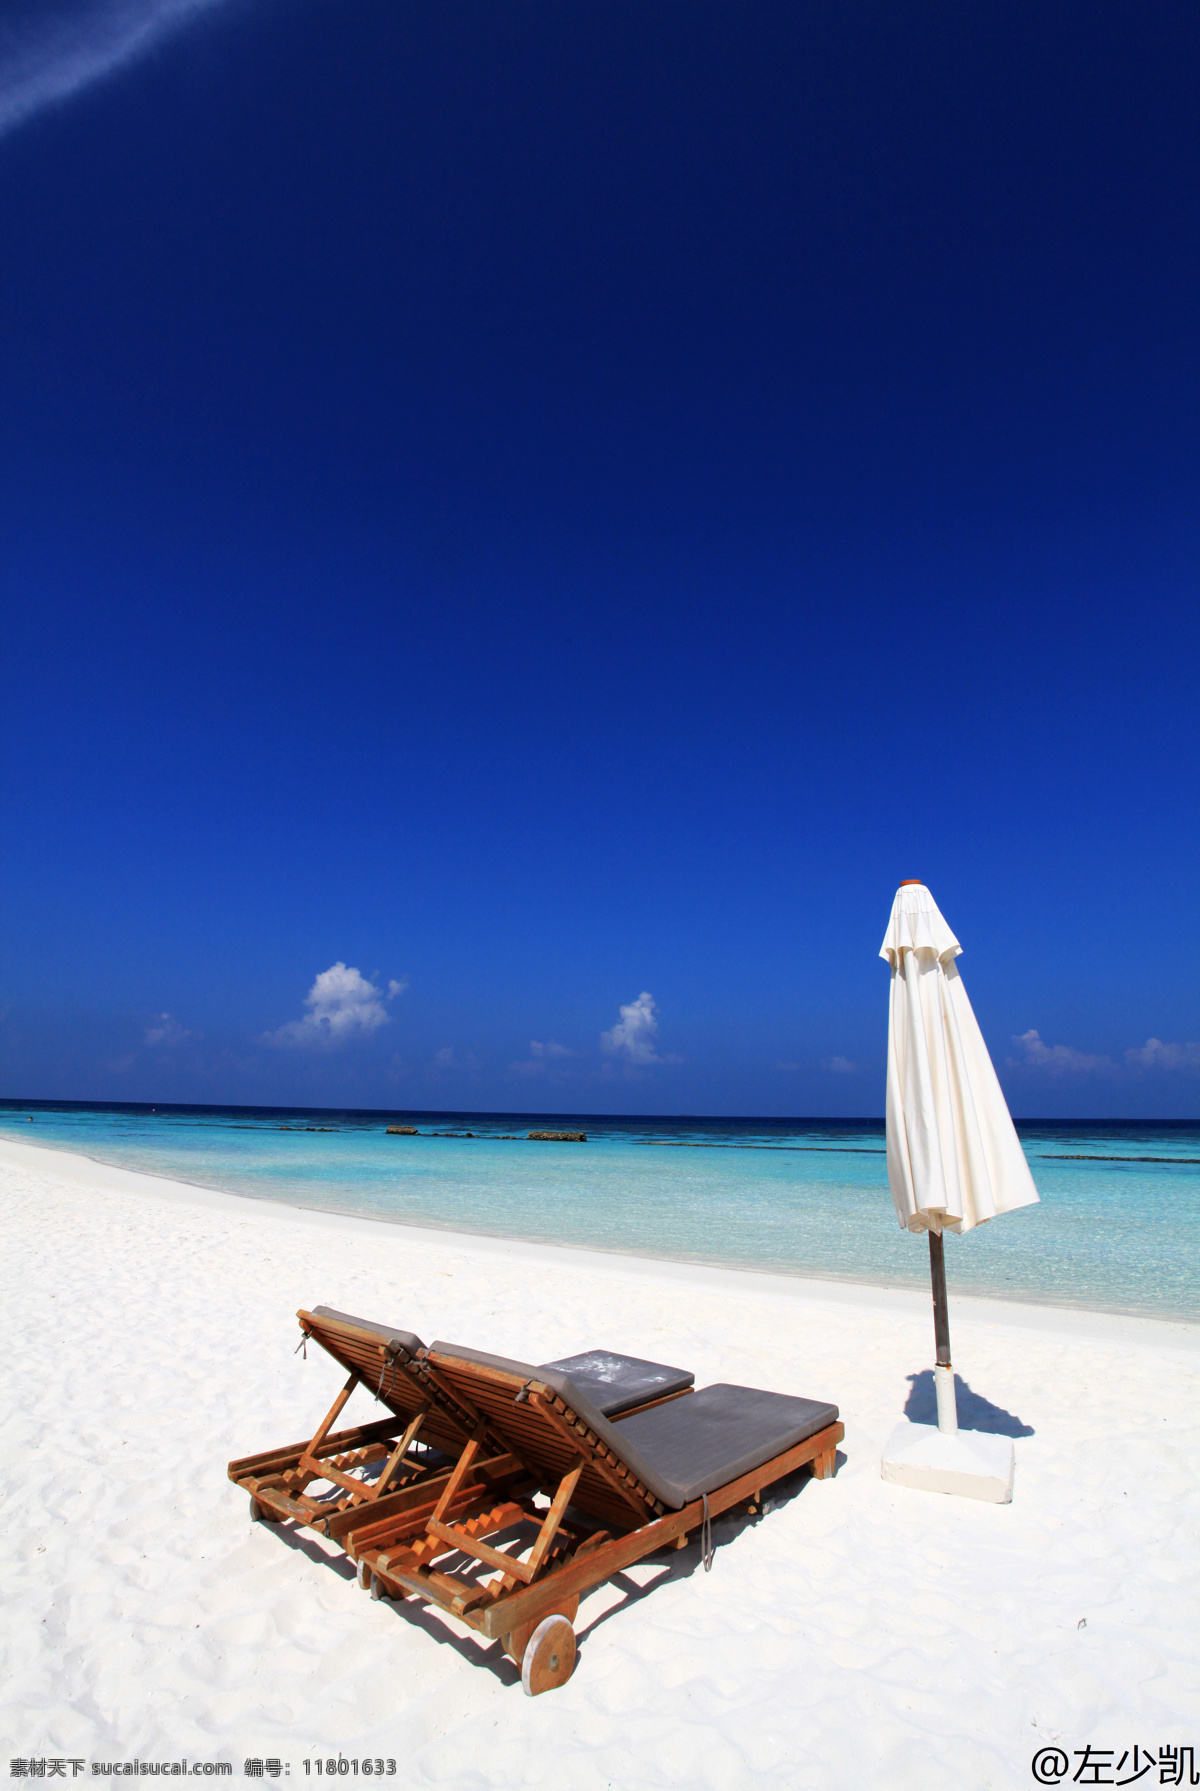 长椅 国外旅游 海滩 旅游 旅游摄影 马尔代夫 游记素材 马尔代夫长椅 psd源文件